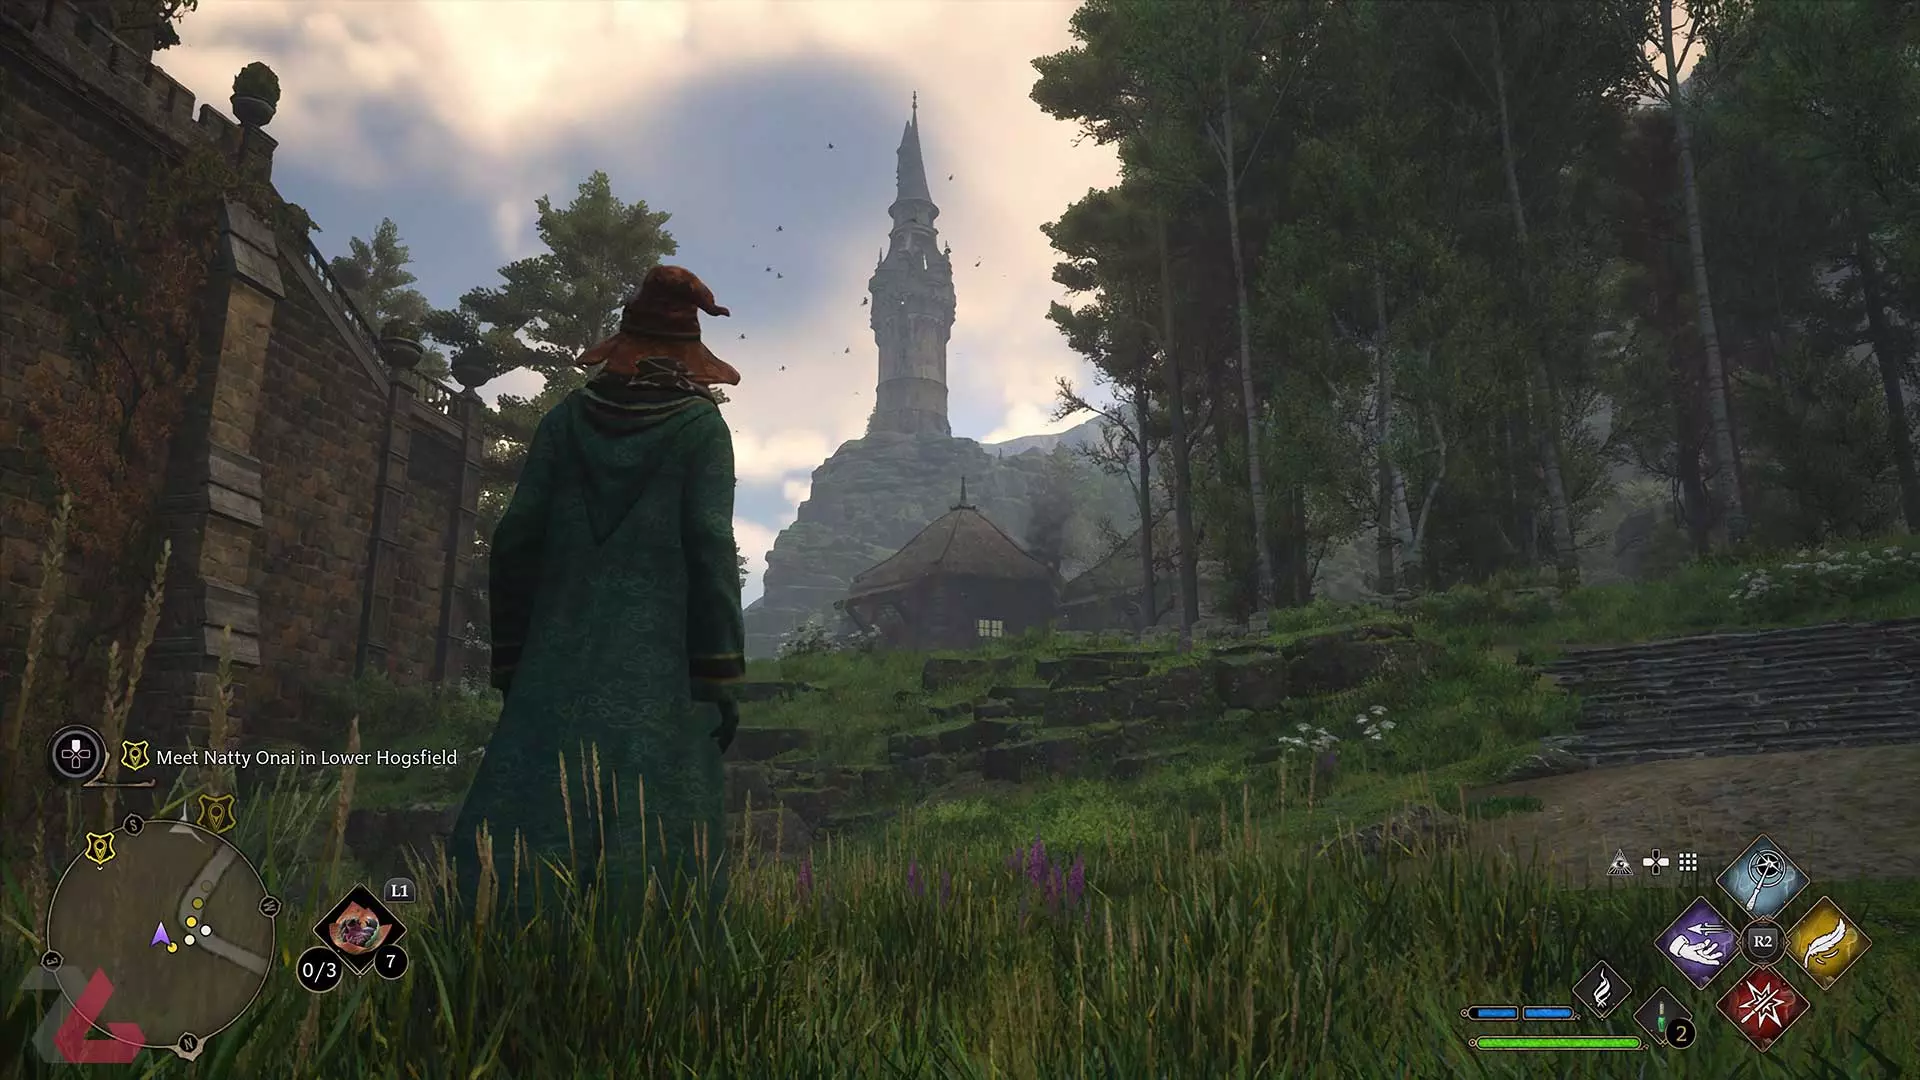 برج و محیط سرسبز در بازی Hogwarts Legacy، محصول استودیو آوالانچ سافتور